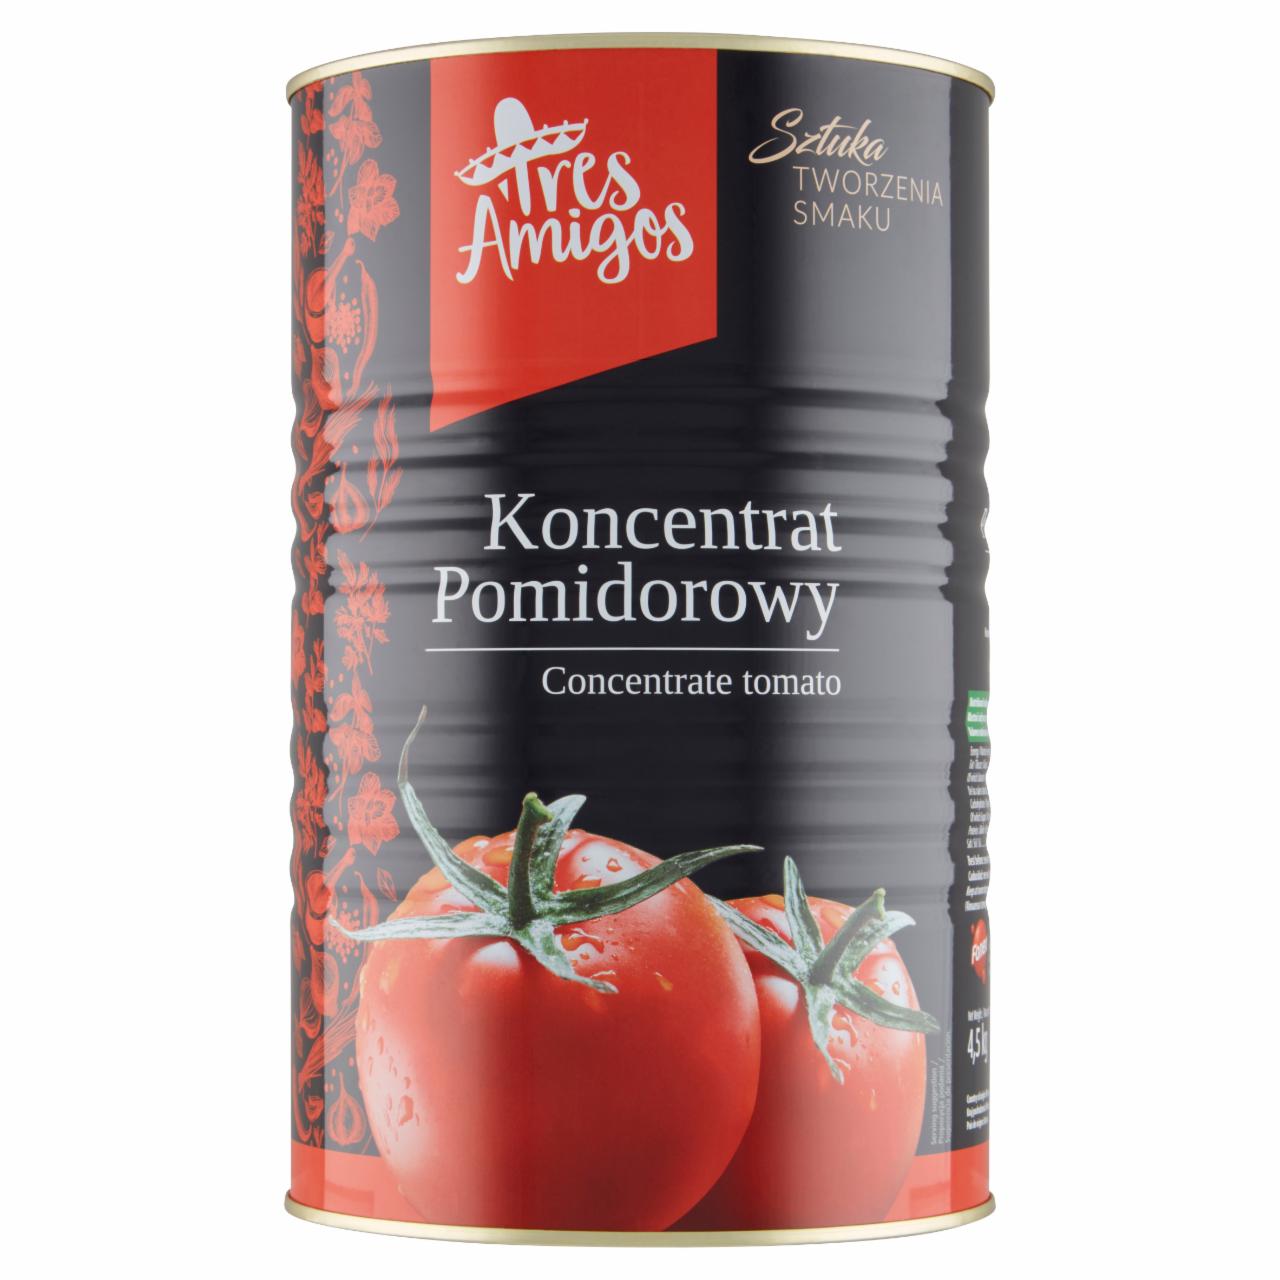 Zdjęcia - Tres Amigos Koncentrat pomidorowy 4,5 kg